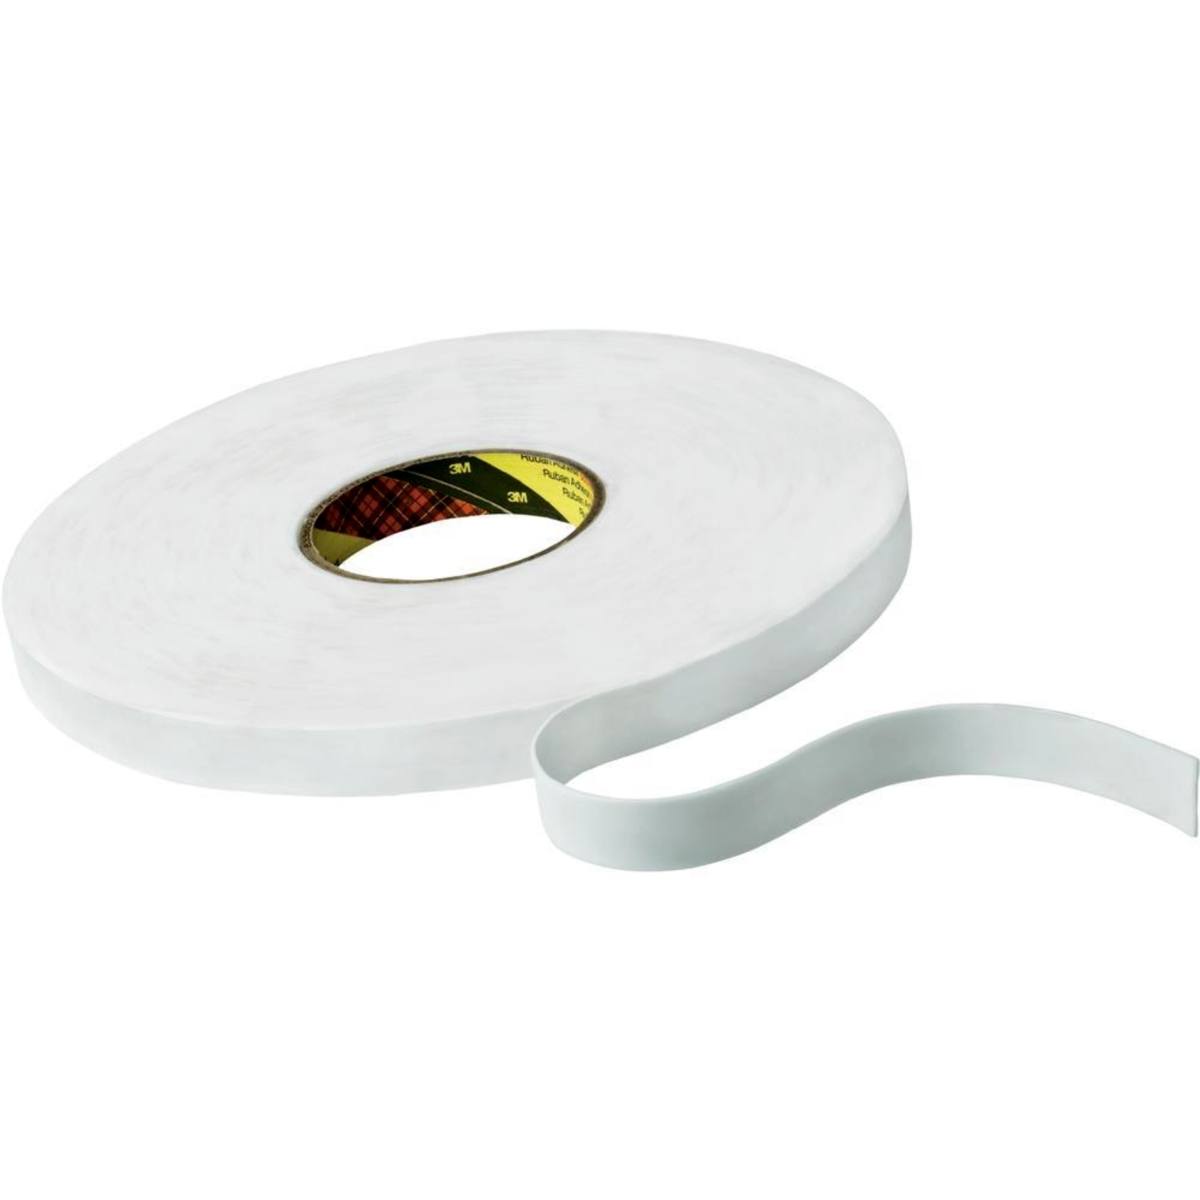 Cinta adhesiva de espuma de PE 3M con adhesivo de resina de caucho 9528, blanca, 19 mm x 66 m, 0,8 mm